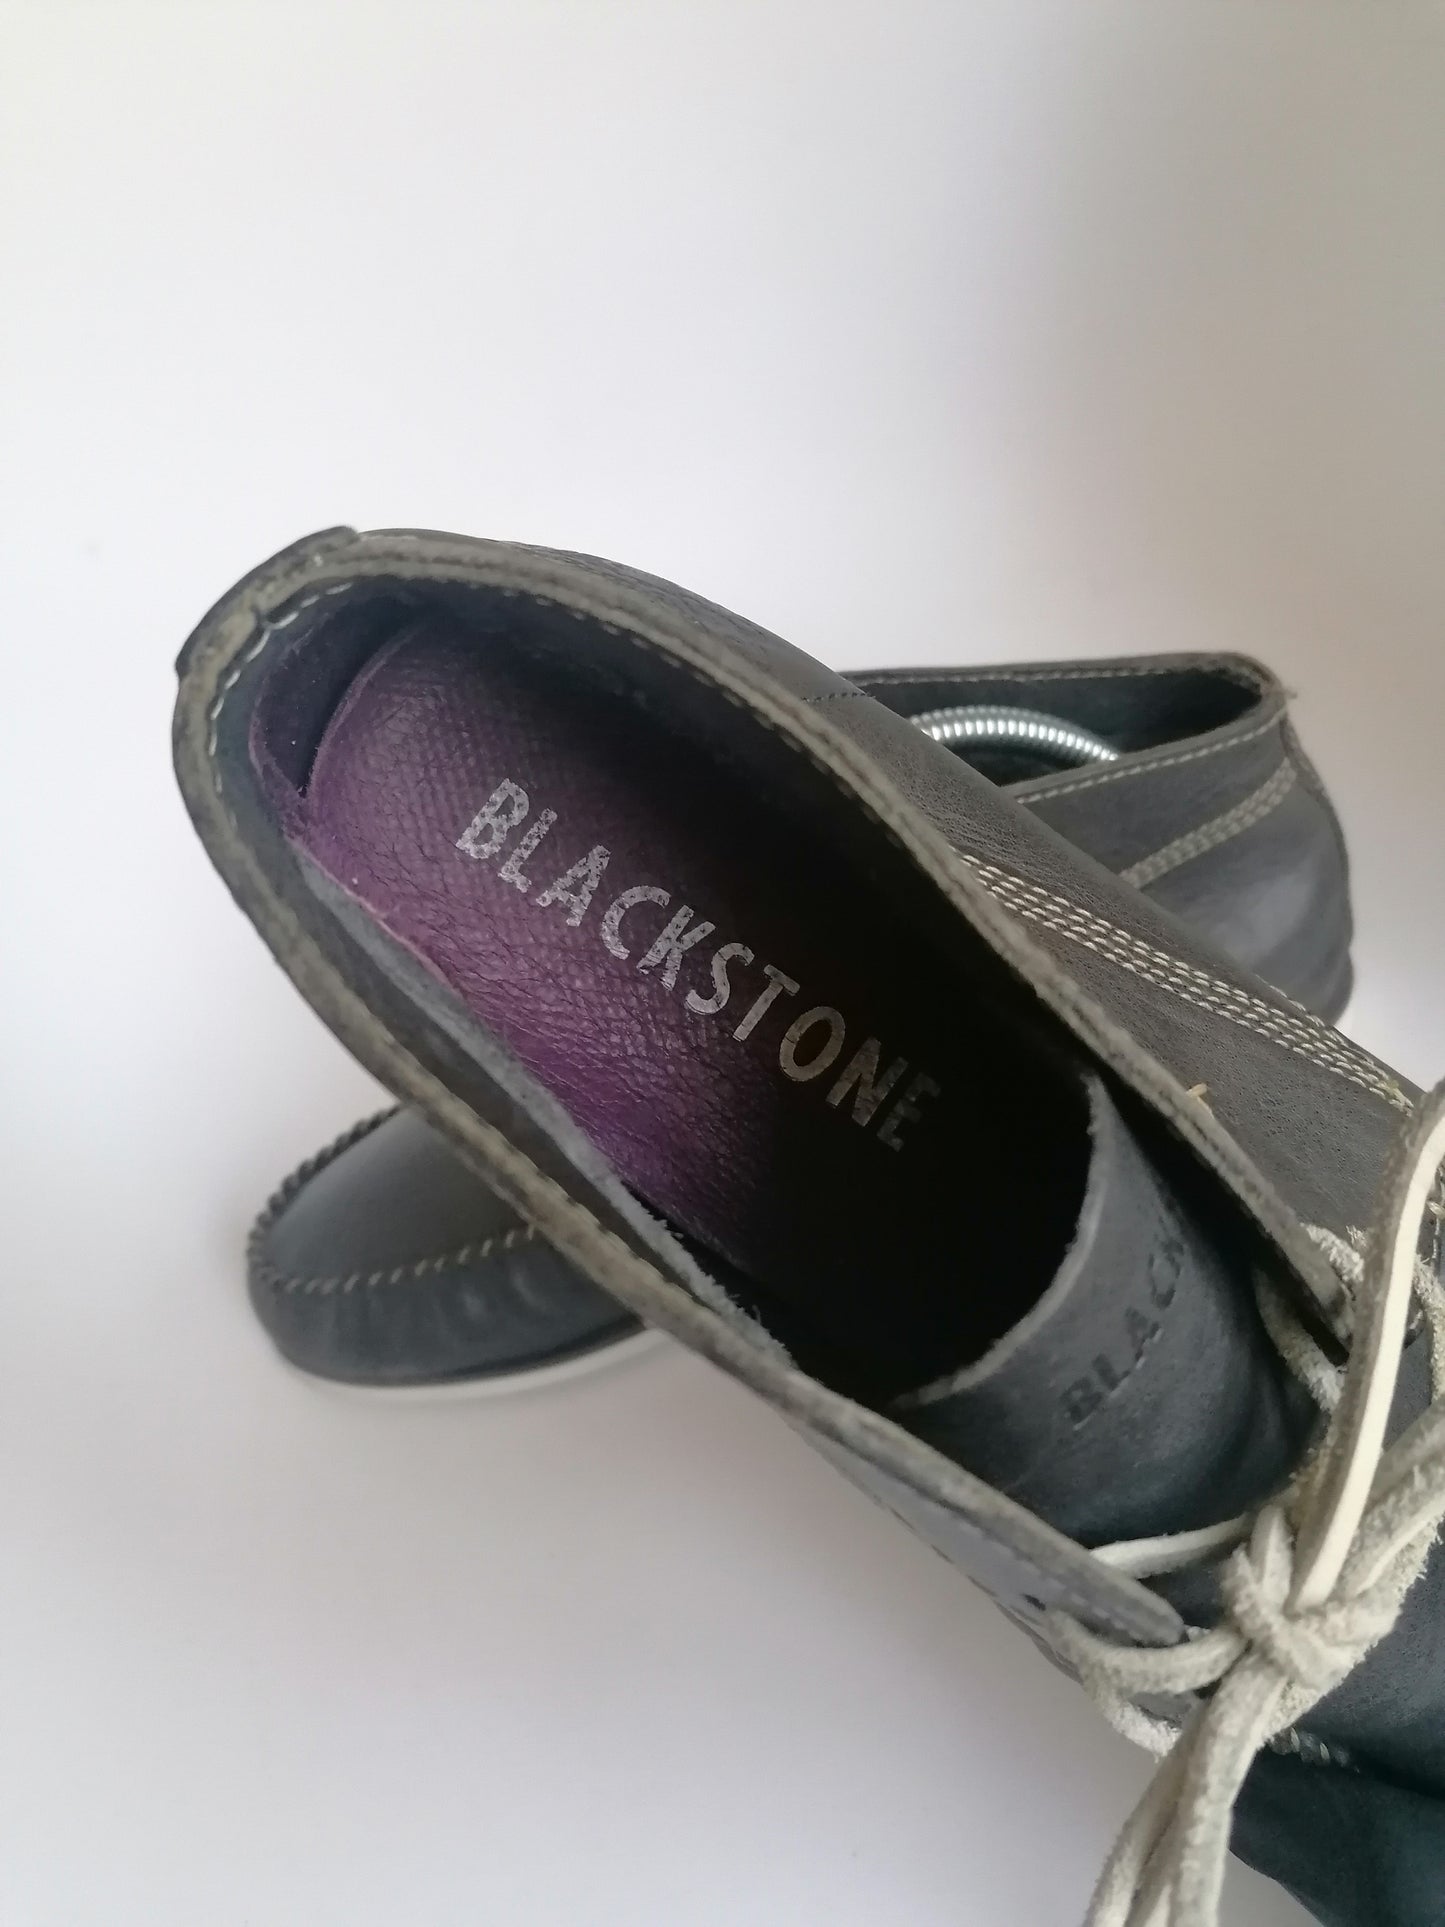 Blackstone Leren halfhoge veter boots. Leren veters. Zwart gekleurd. Maat 40. #902